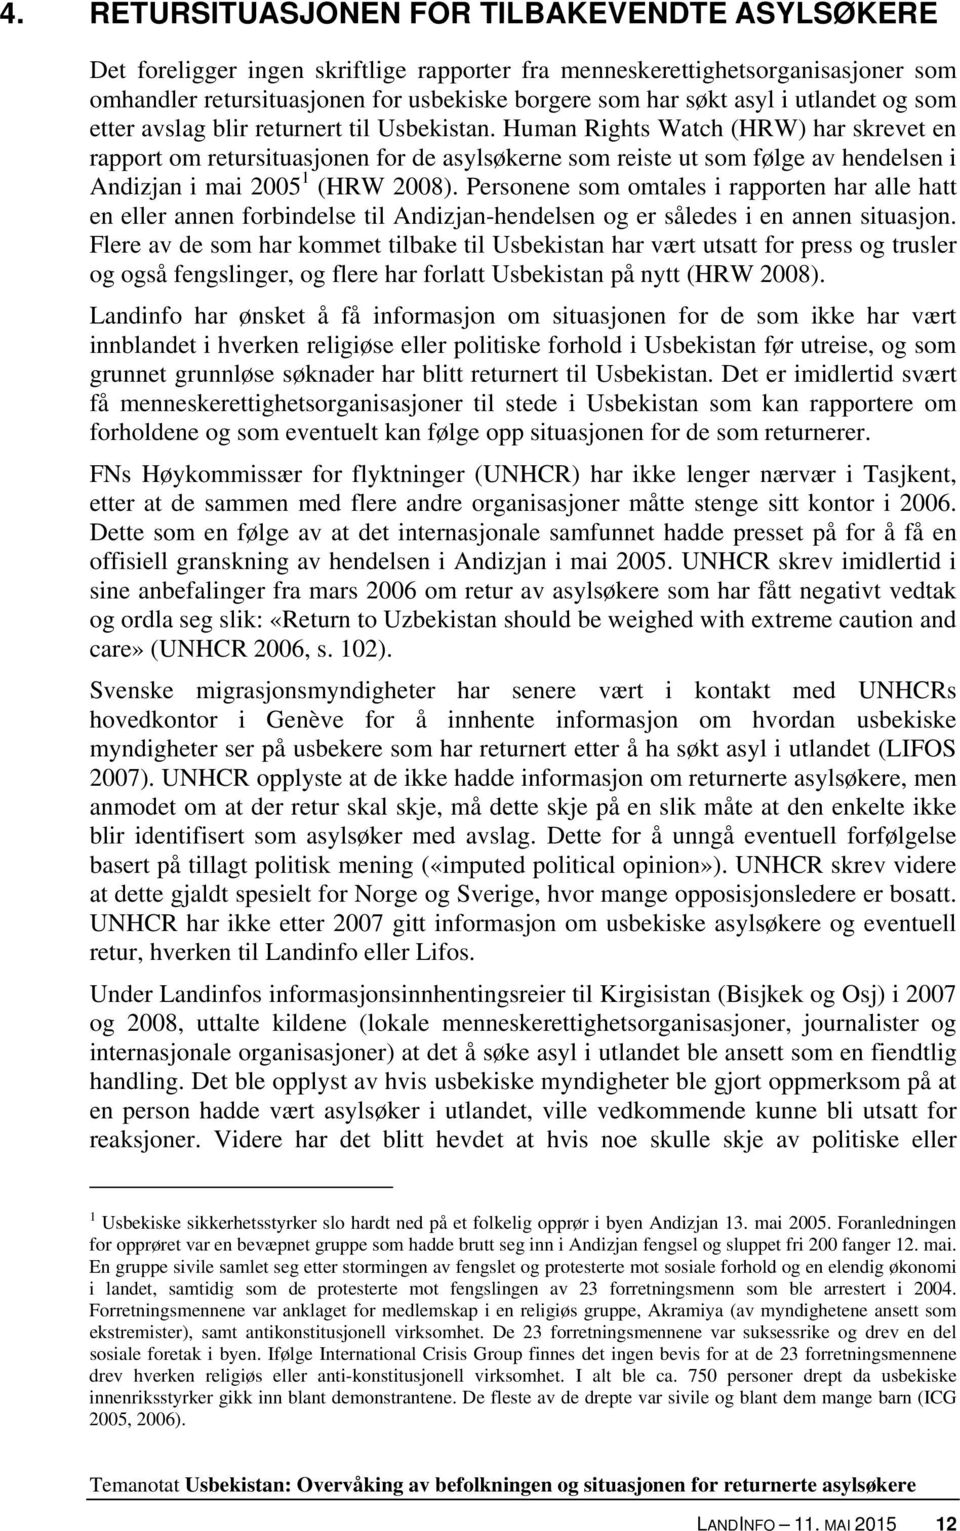 Human Rights Watch (HRW) har skrevet en rapport om retursituasjonen for de asylsøkerne som reiste ut som følge av hendelsen i Andizjan i mai 2005 1 (HRW 2008).